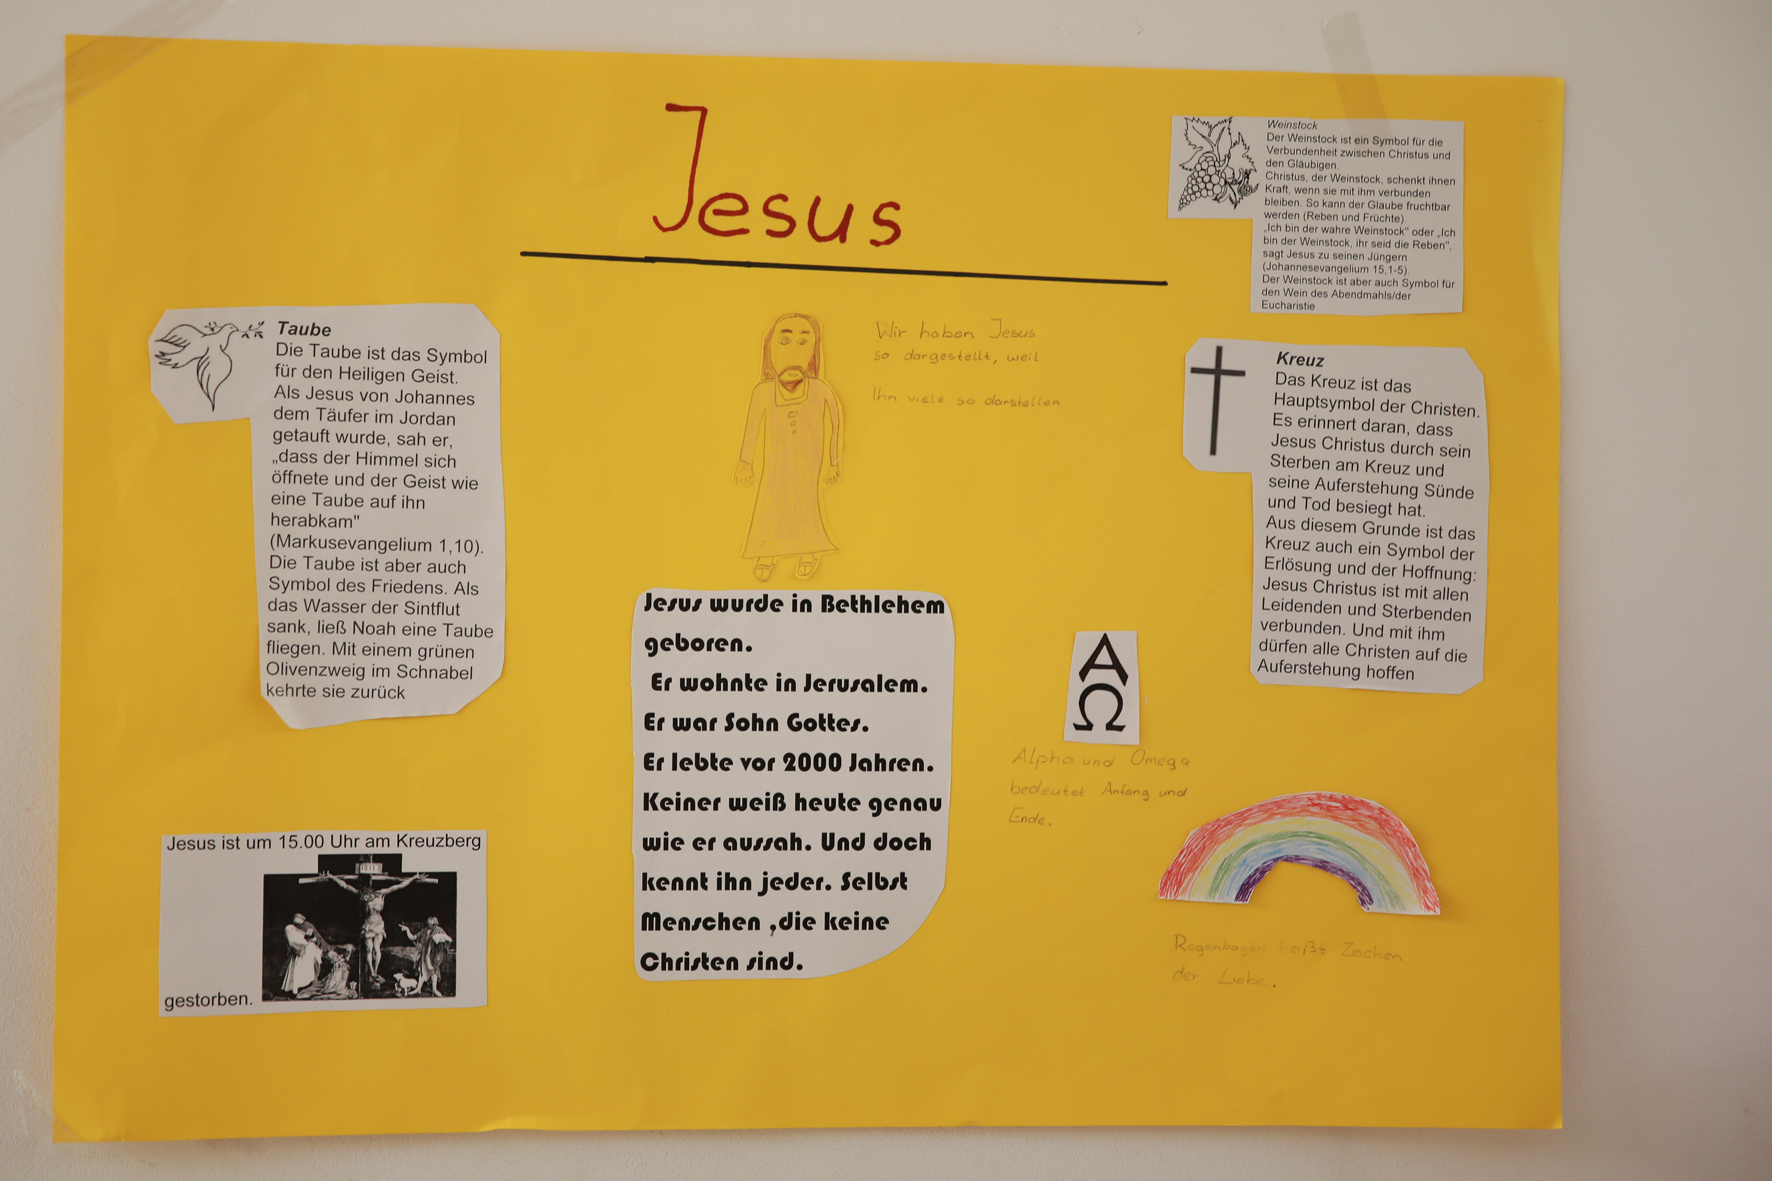 Ergebnisse | Auf den Spuren von Jesus Christus